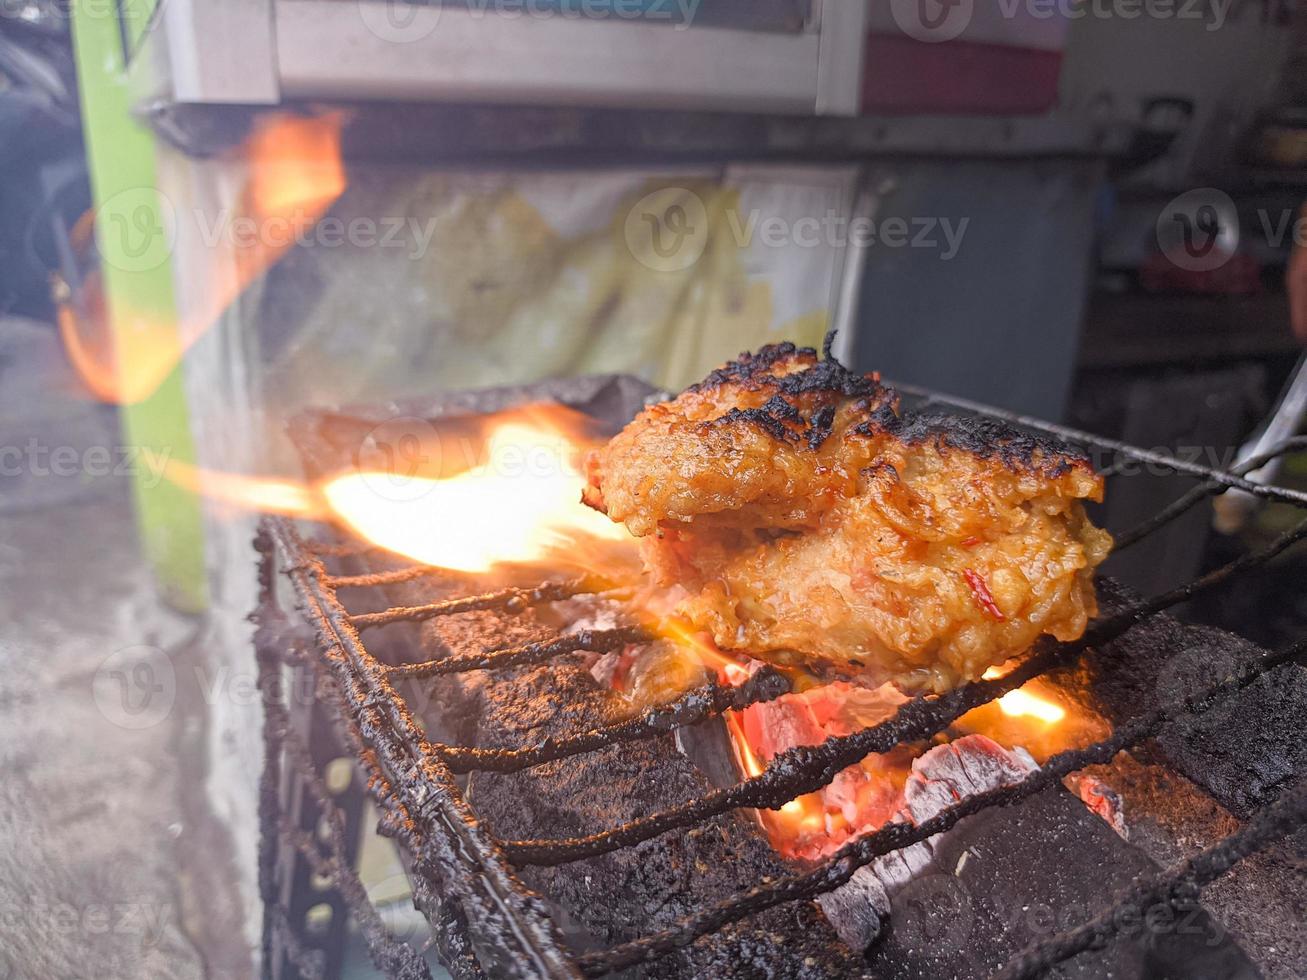 kip borst verpakt in krokant meel met heerlijk pittig kruiderijen gegrild Aan heet houtskool.typisch gegrild kip voedsel van Indonesië foto